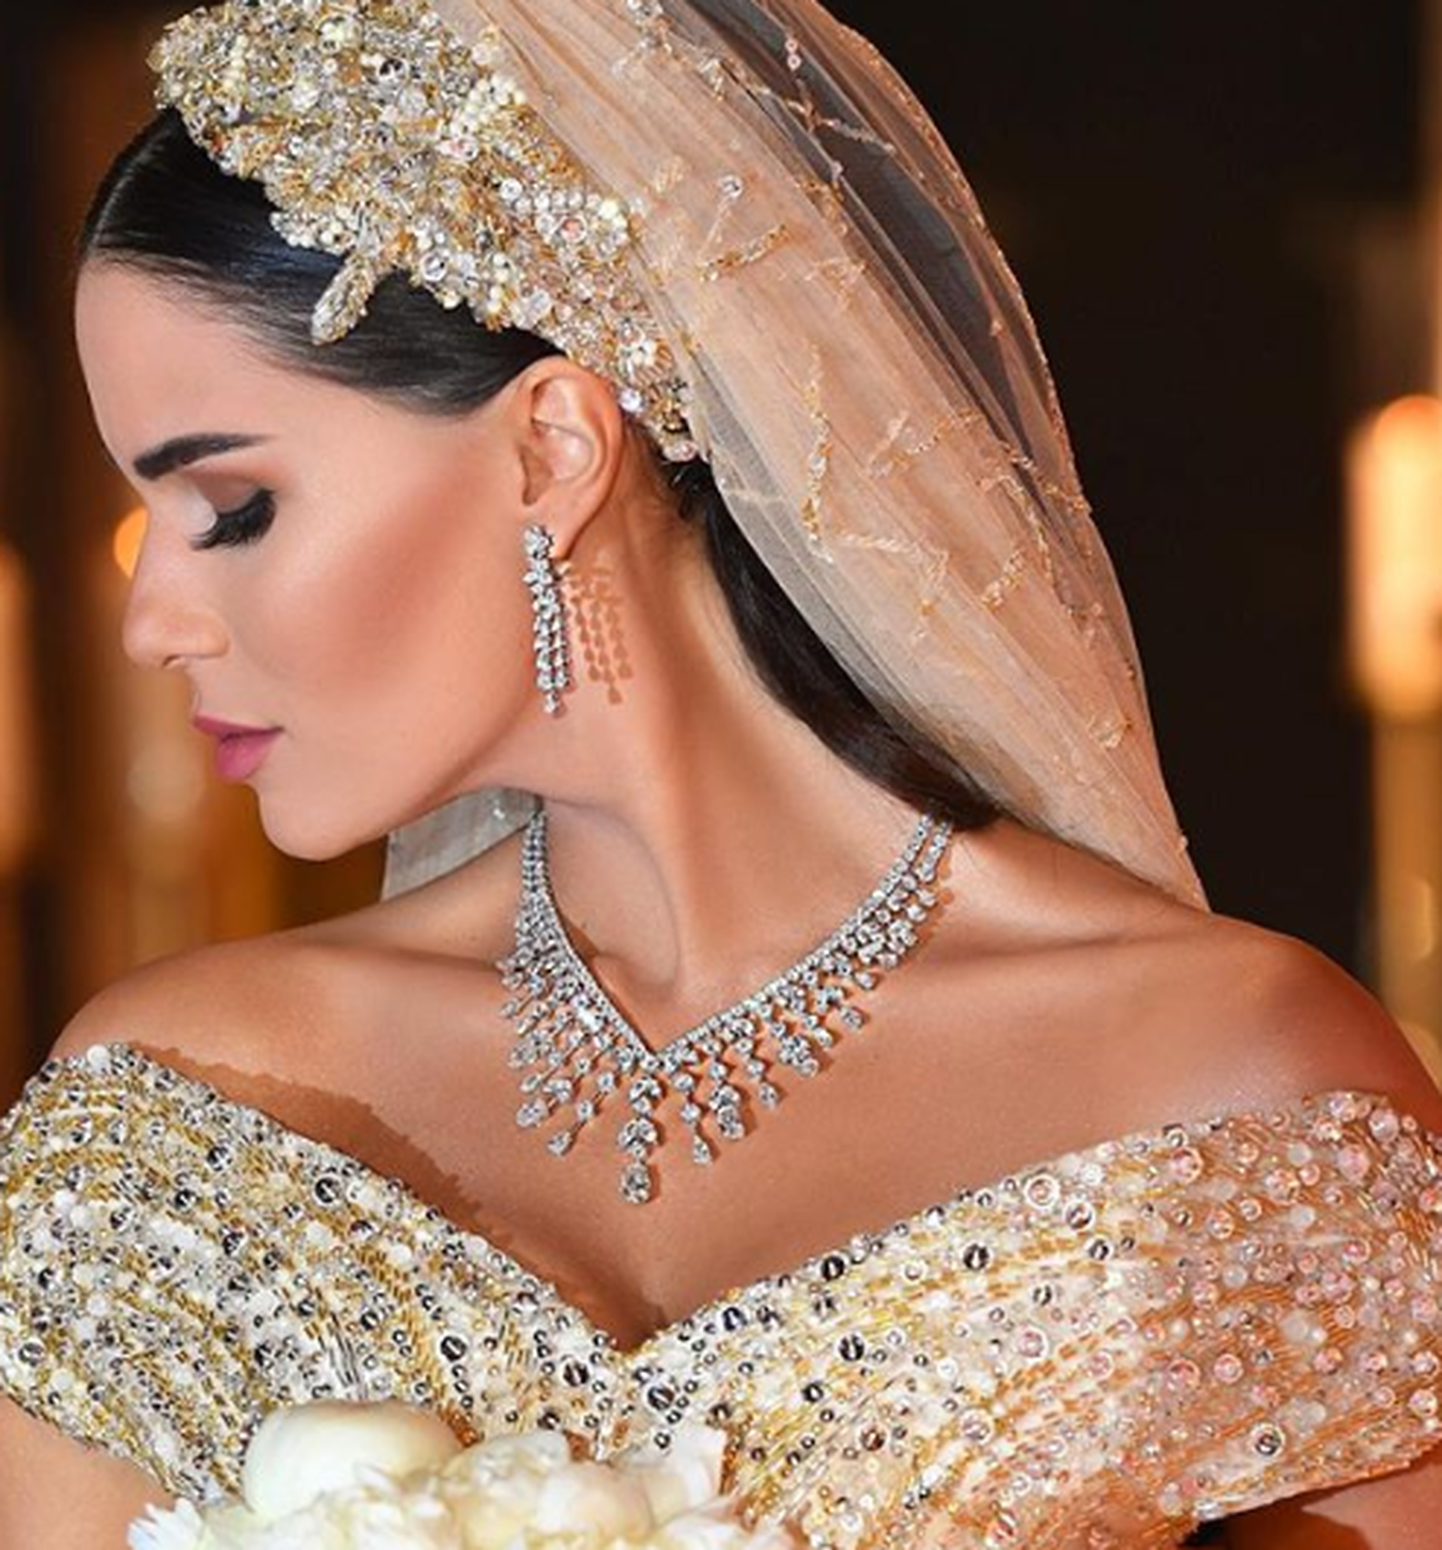 Свадебное платье, вышитое золотом и серебром с 40-метровой фатой, инкрустированной кристаллами Swarovski вручную.